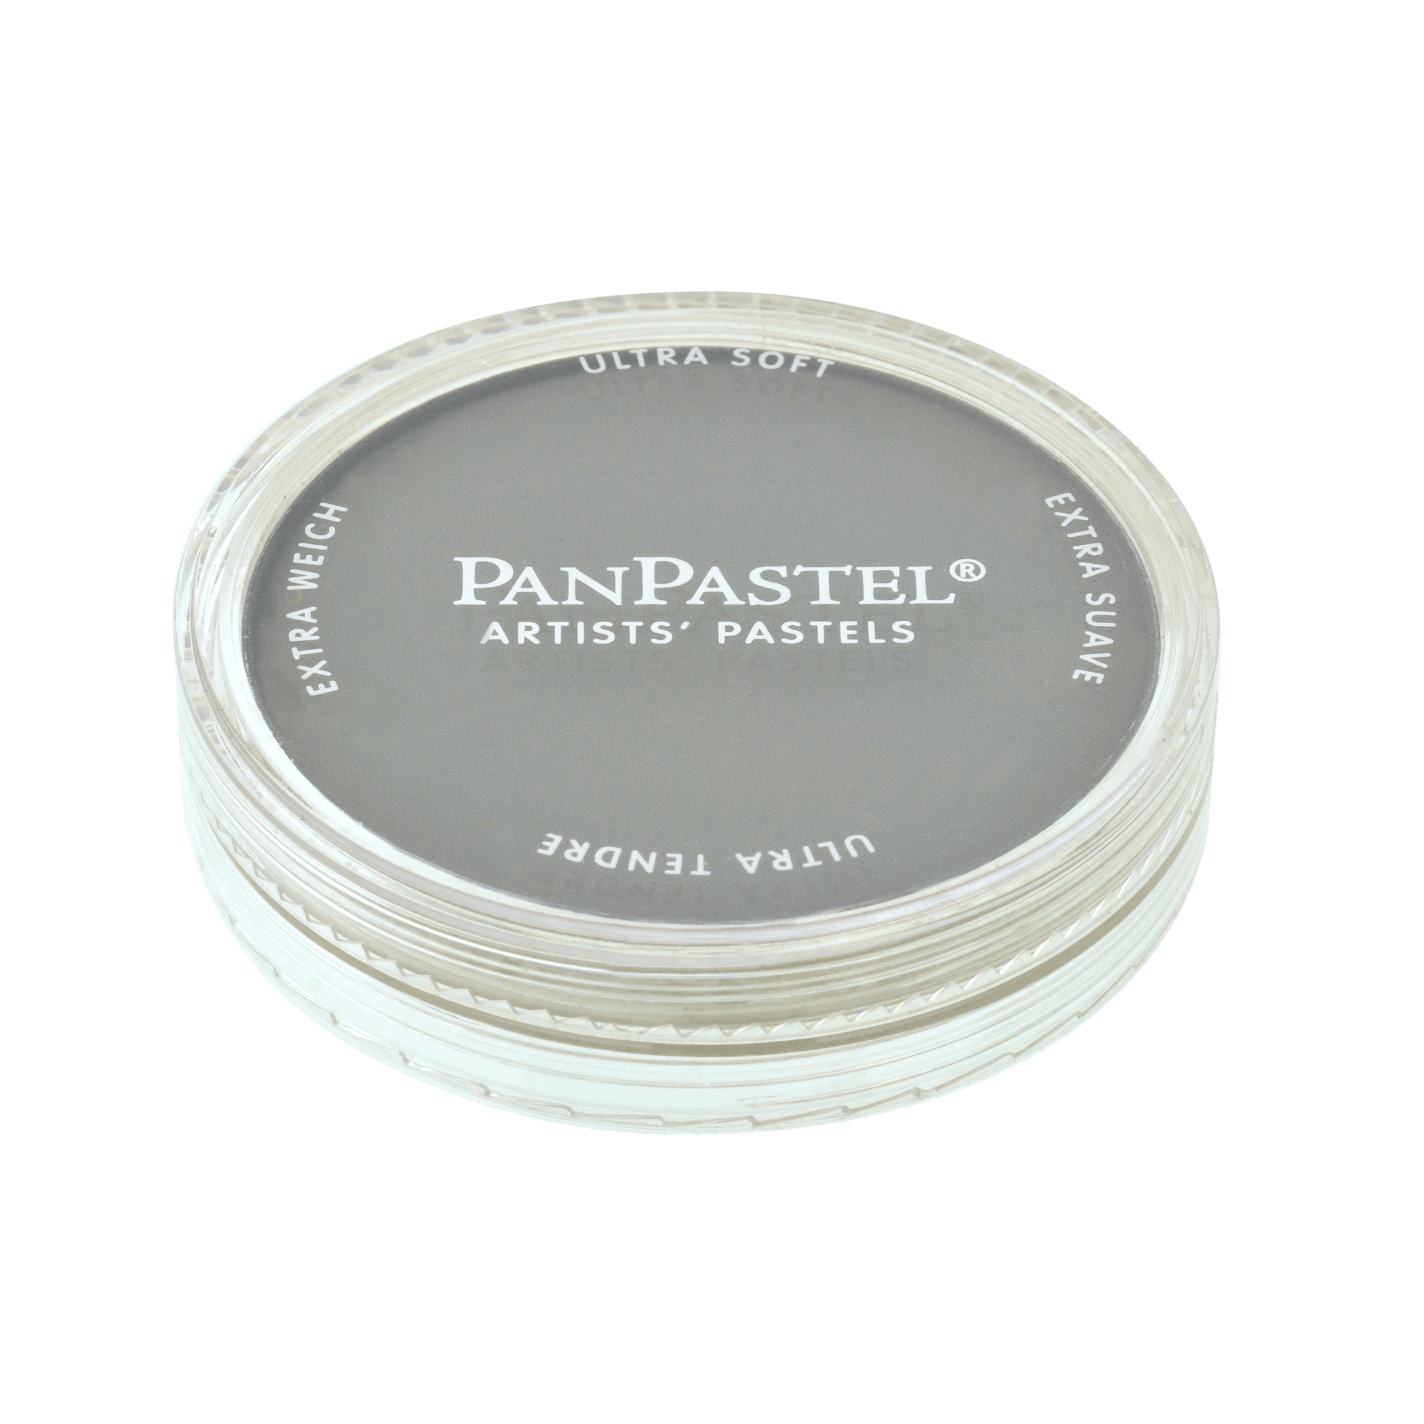 Panpastel Tørpastel 9ml Neutral Grey Shade 820.3